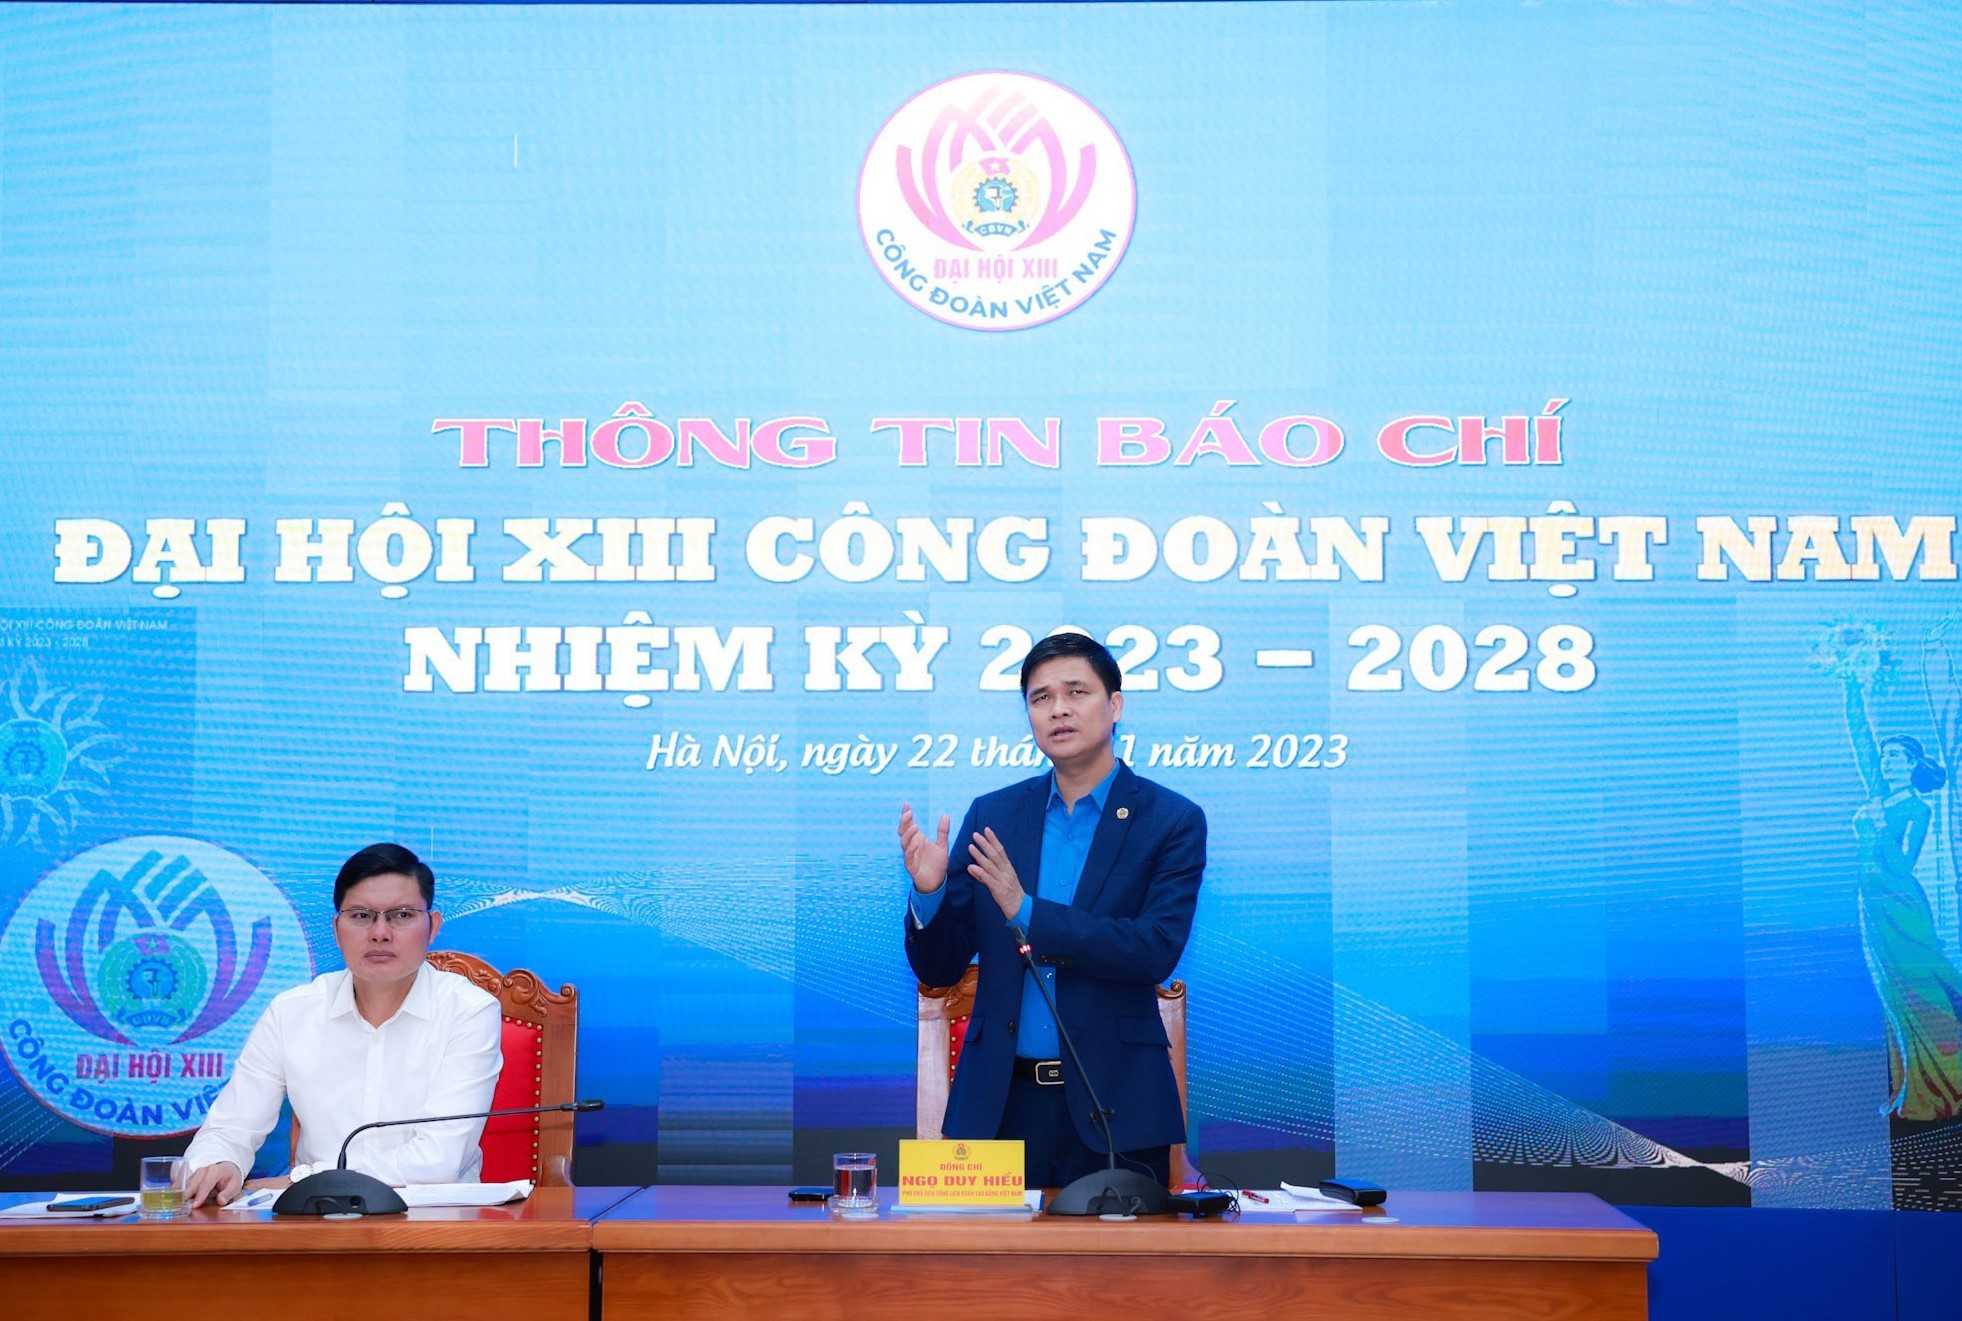 Các điểm mới trong cách thức tổ chức Đại hội XIII Công đoàn Việt Nam